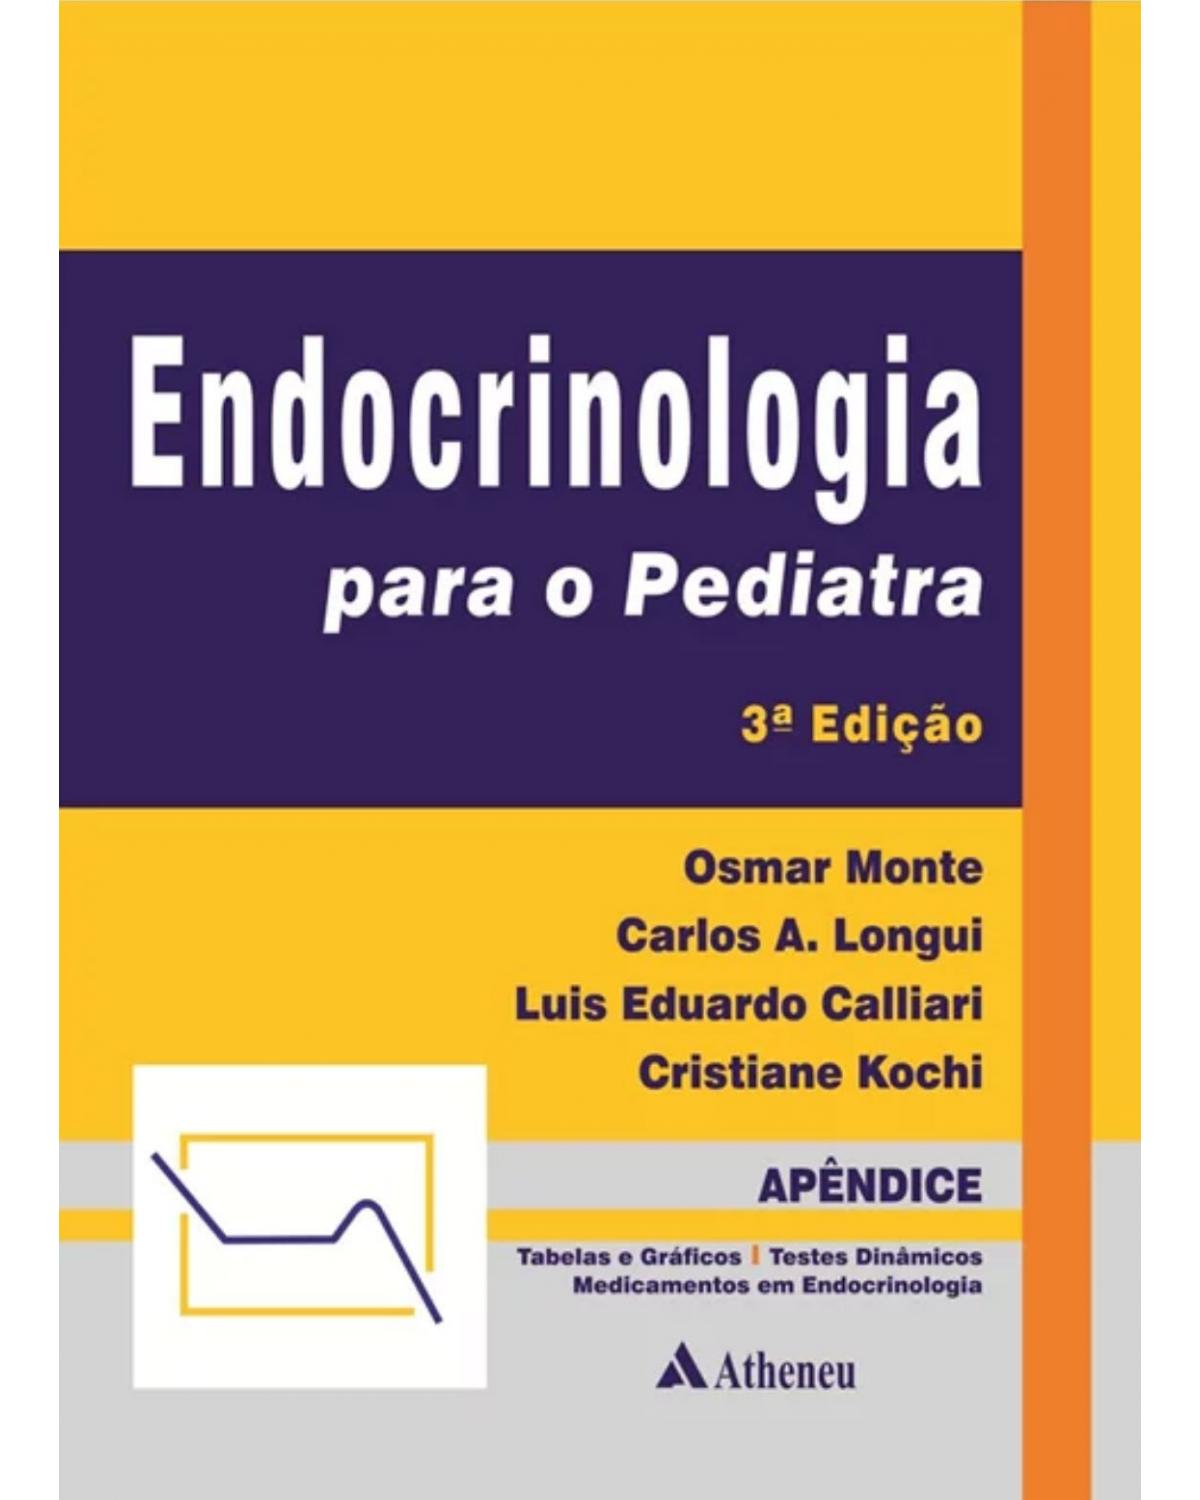 Endocrinologia para o pediatra - 3ª Edição | 2006